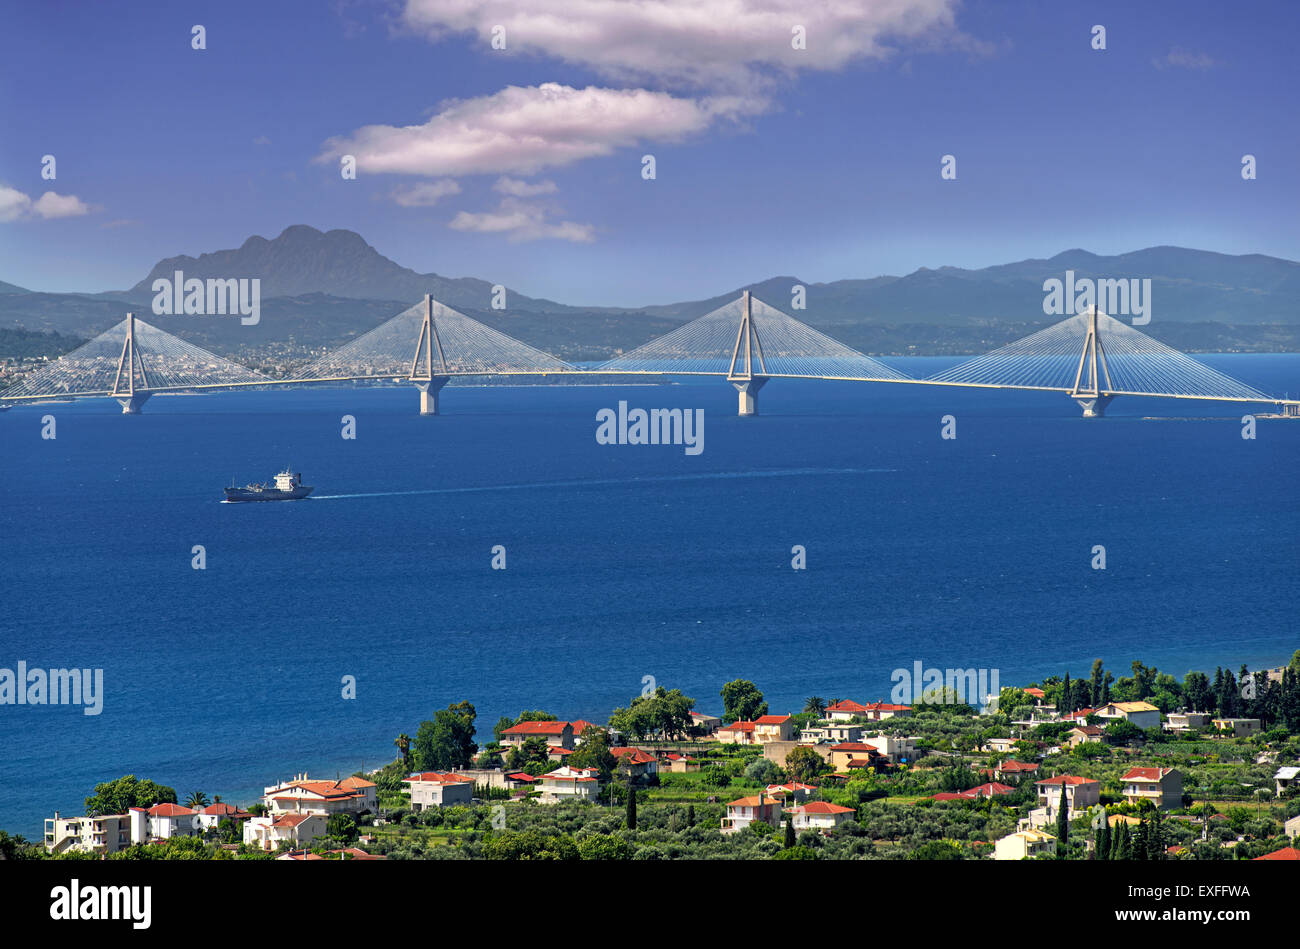 Rio-Antirrio puente, la más larga del mundo del tipo suspendido totalmente, vistos desde la ciudad de Nafpaktos región Aetoloacarnania, Grecia Foto de stock